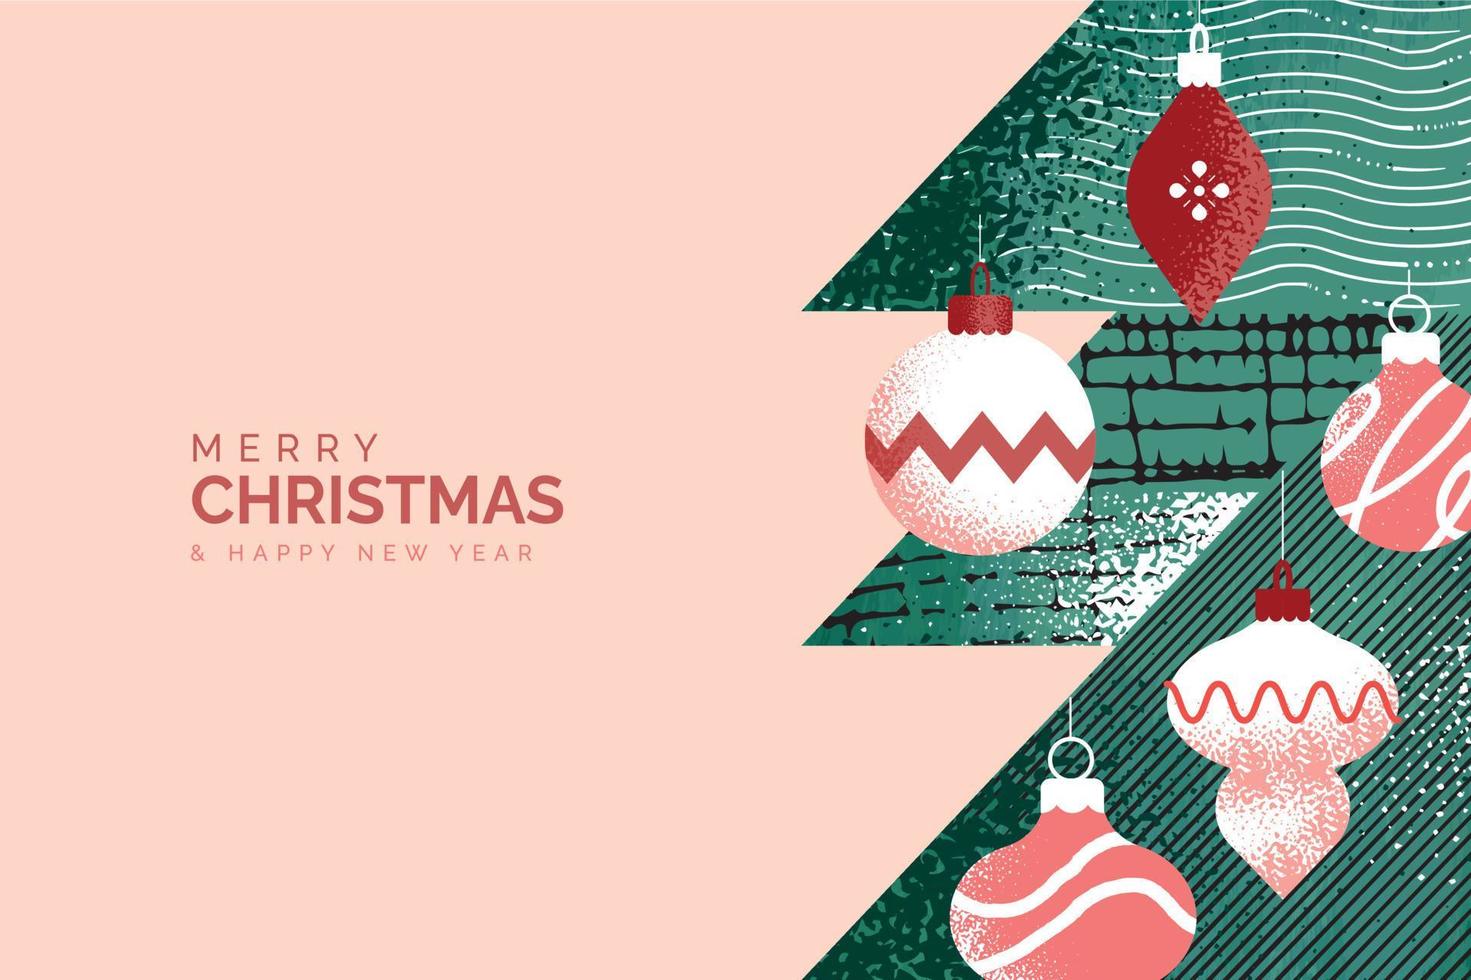 vrolijk Kerstmis en gelukkig nieuw jaar groet kaart. vector illustratie concept voor achtergrond, groet kaart, partij uitnodiging kaart, website banier, sociaal media banier, afzet materiaal.